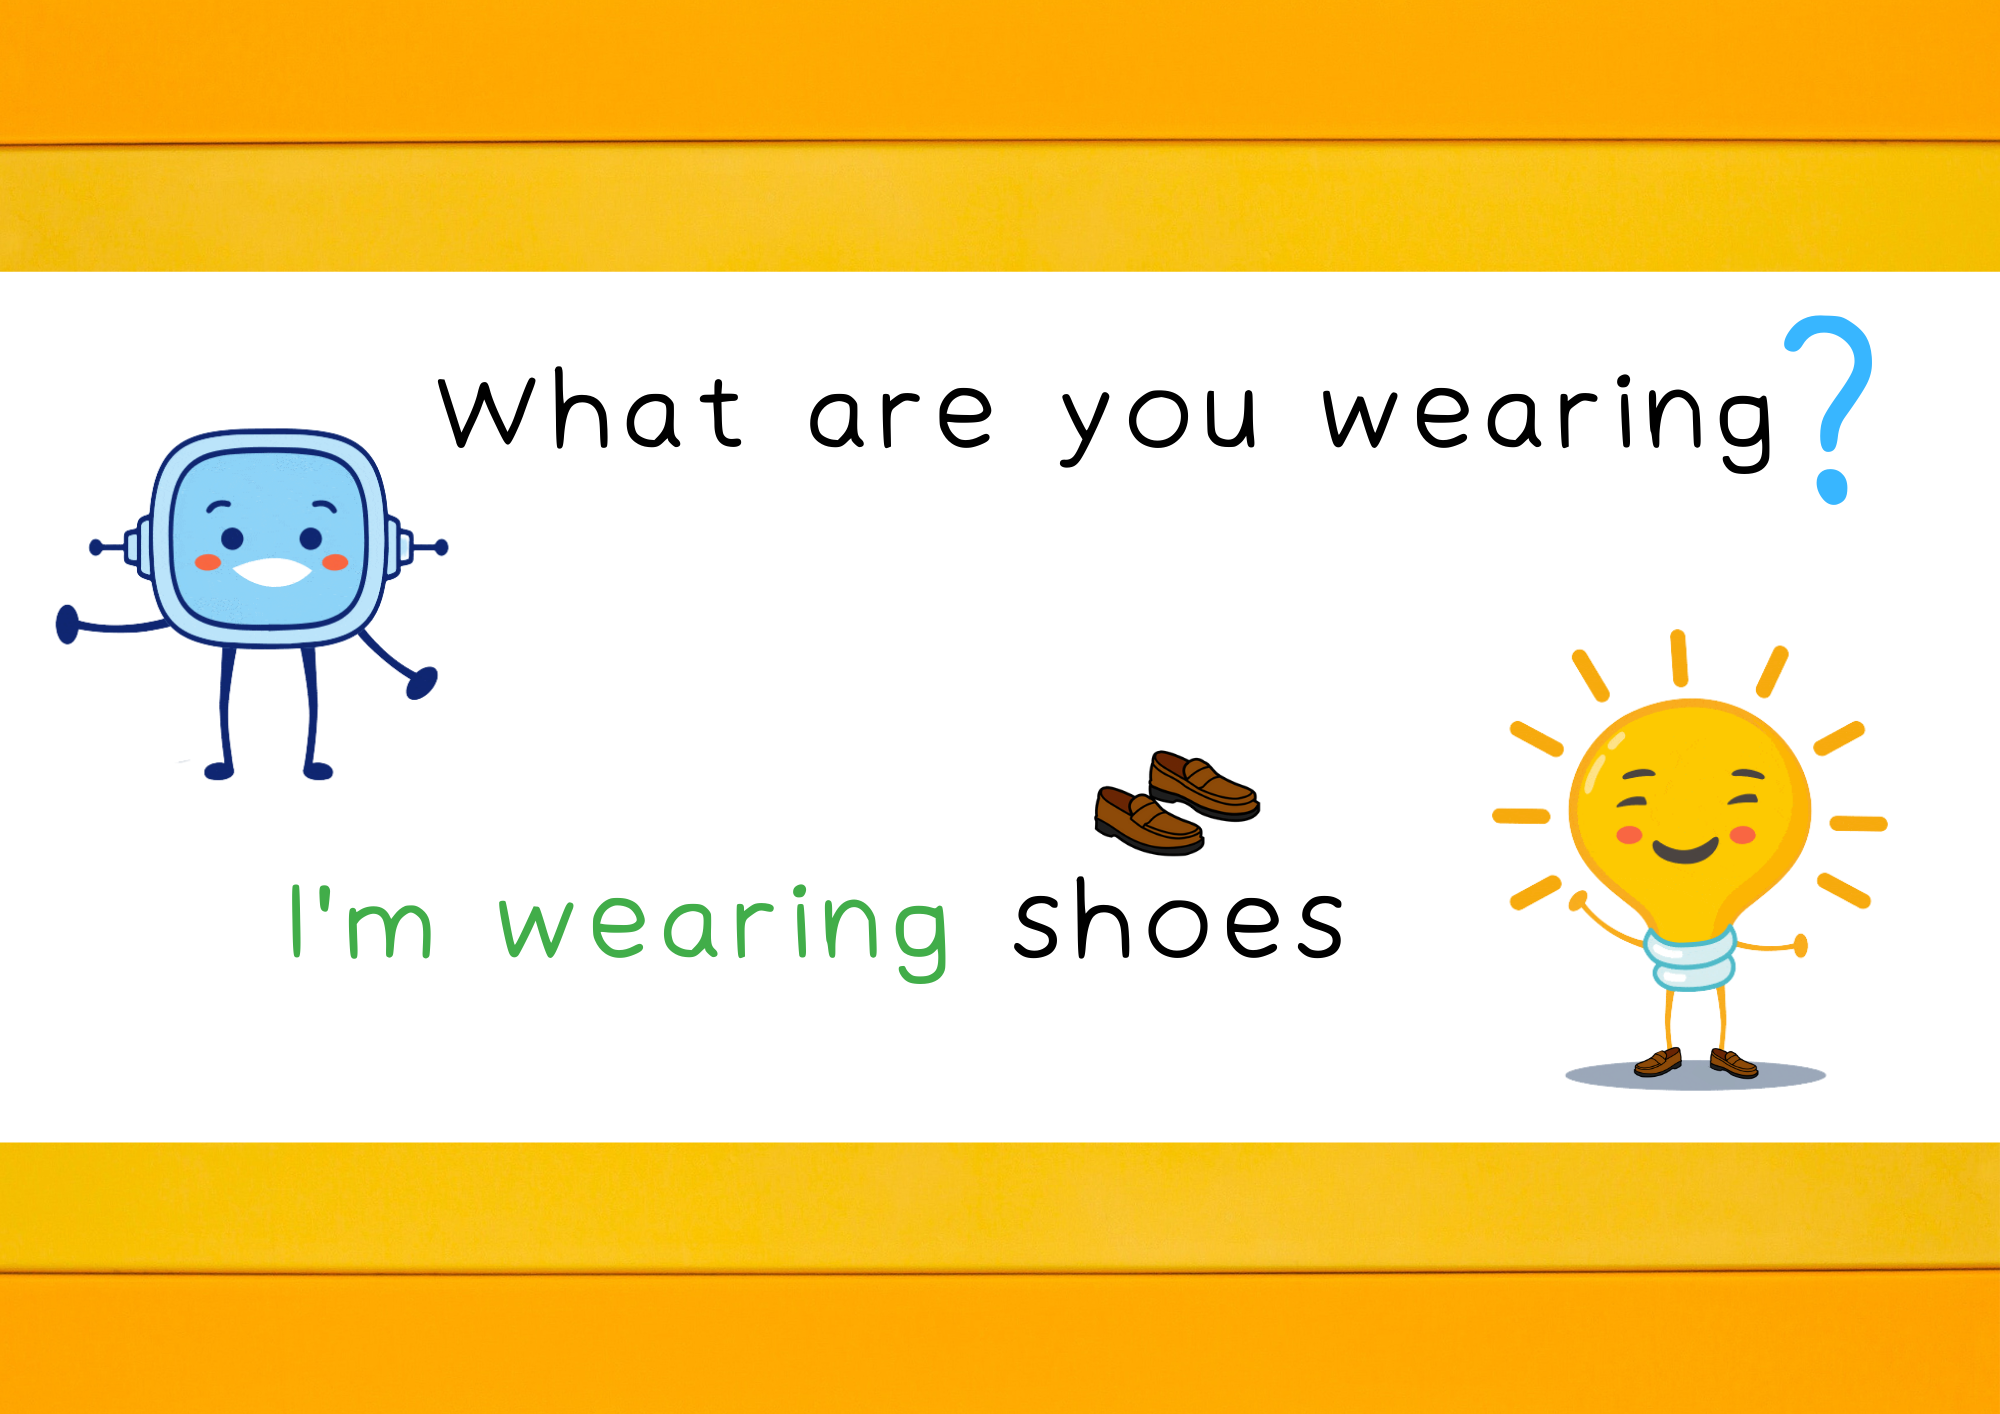 Para preguntar por la prenda de ropa que se lleva puesta utilizamos la estructura “What are you wearing?”